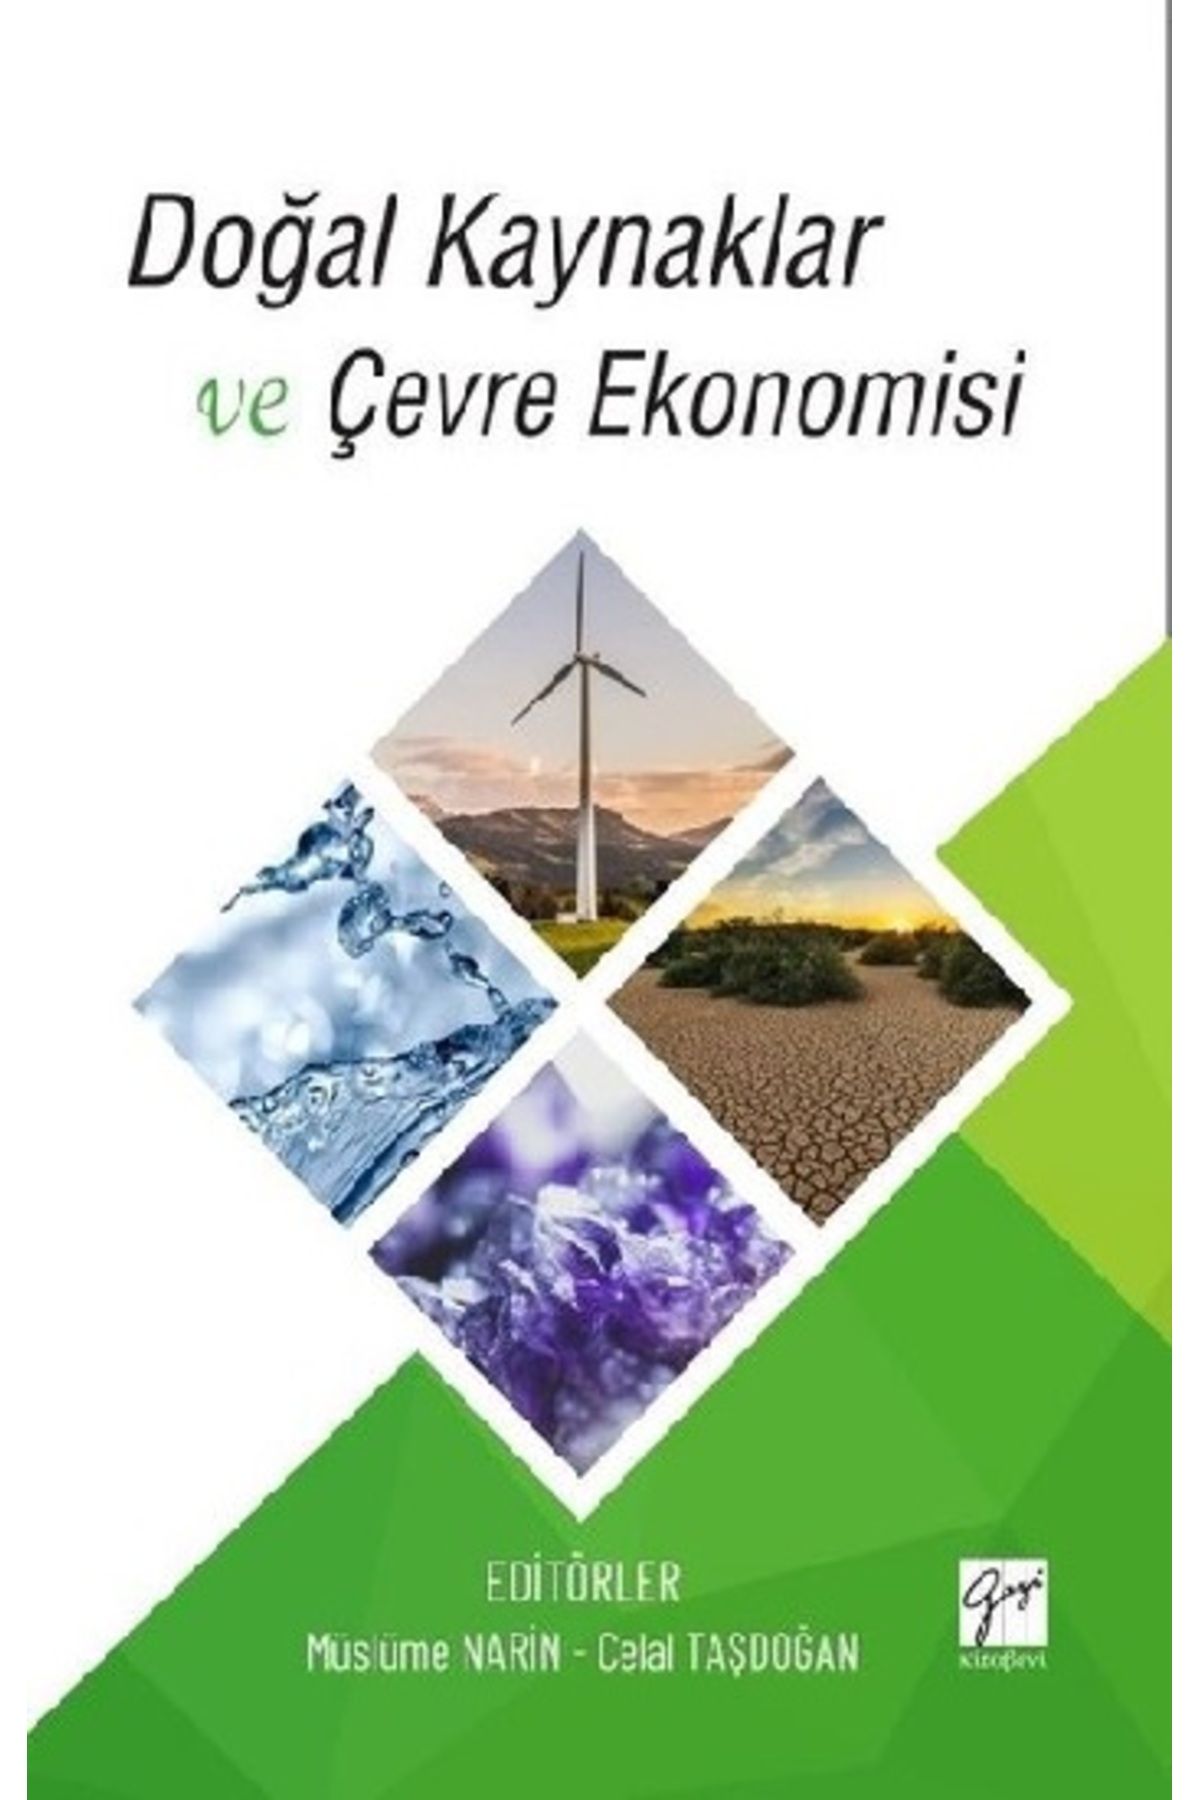 Gazi Kitabevi Doğal Kaynaklar ve Çevre Ekonomisi kitabı - Müslüme Narin & Celal Taşdoğan - Gazi Kitabevi